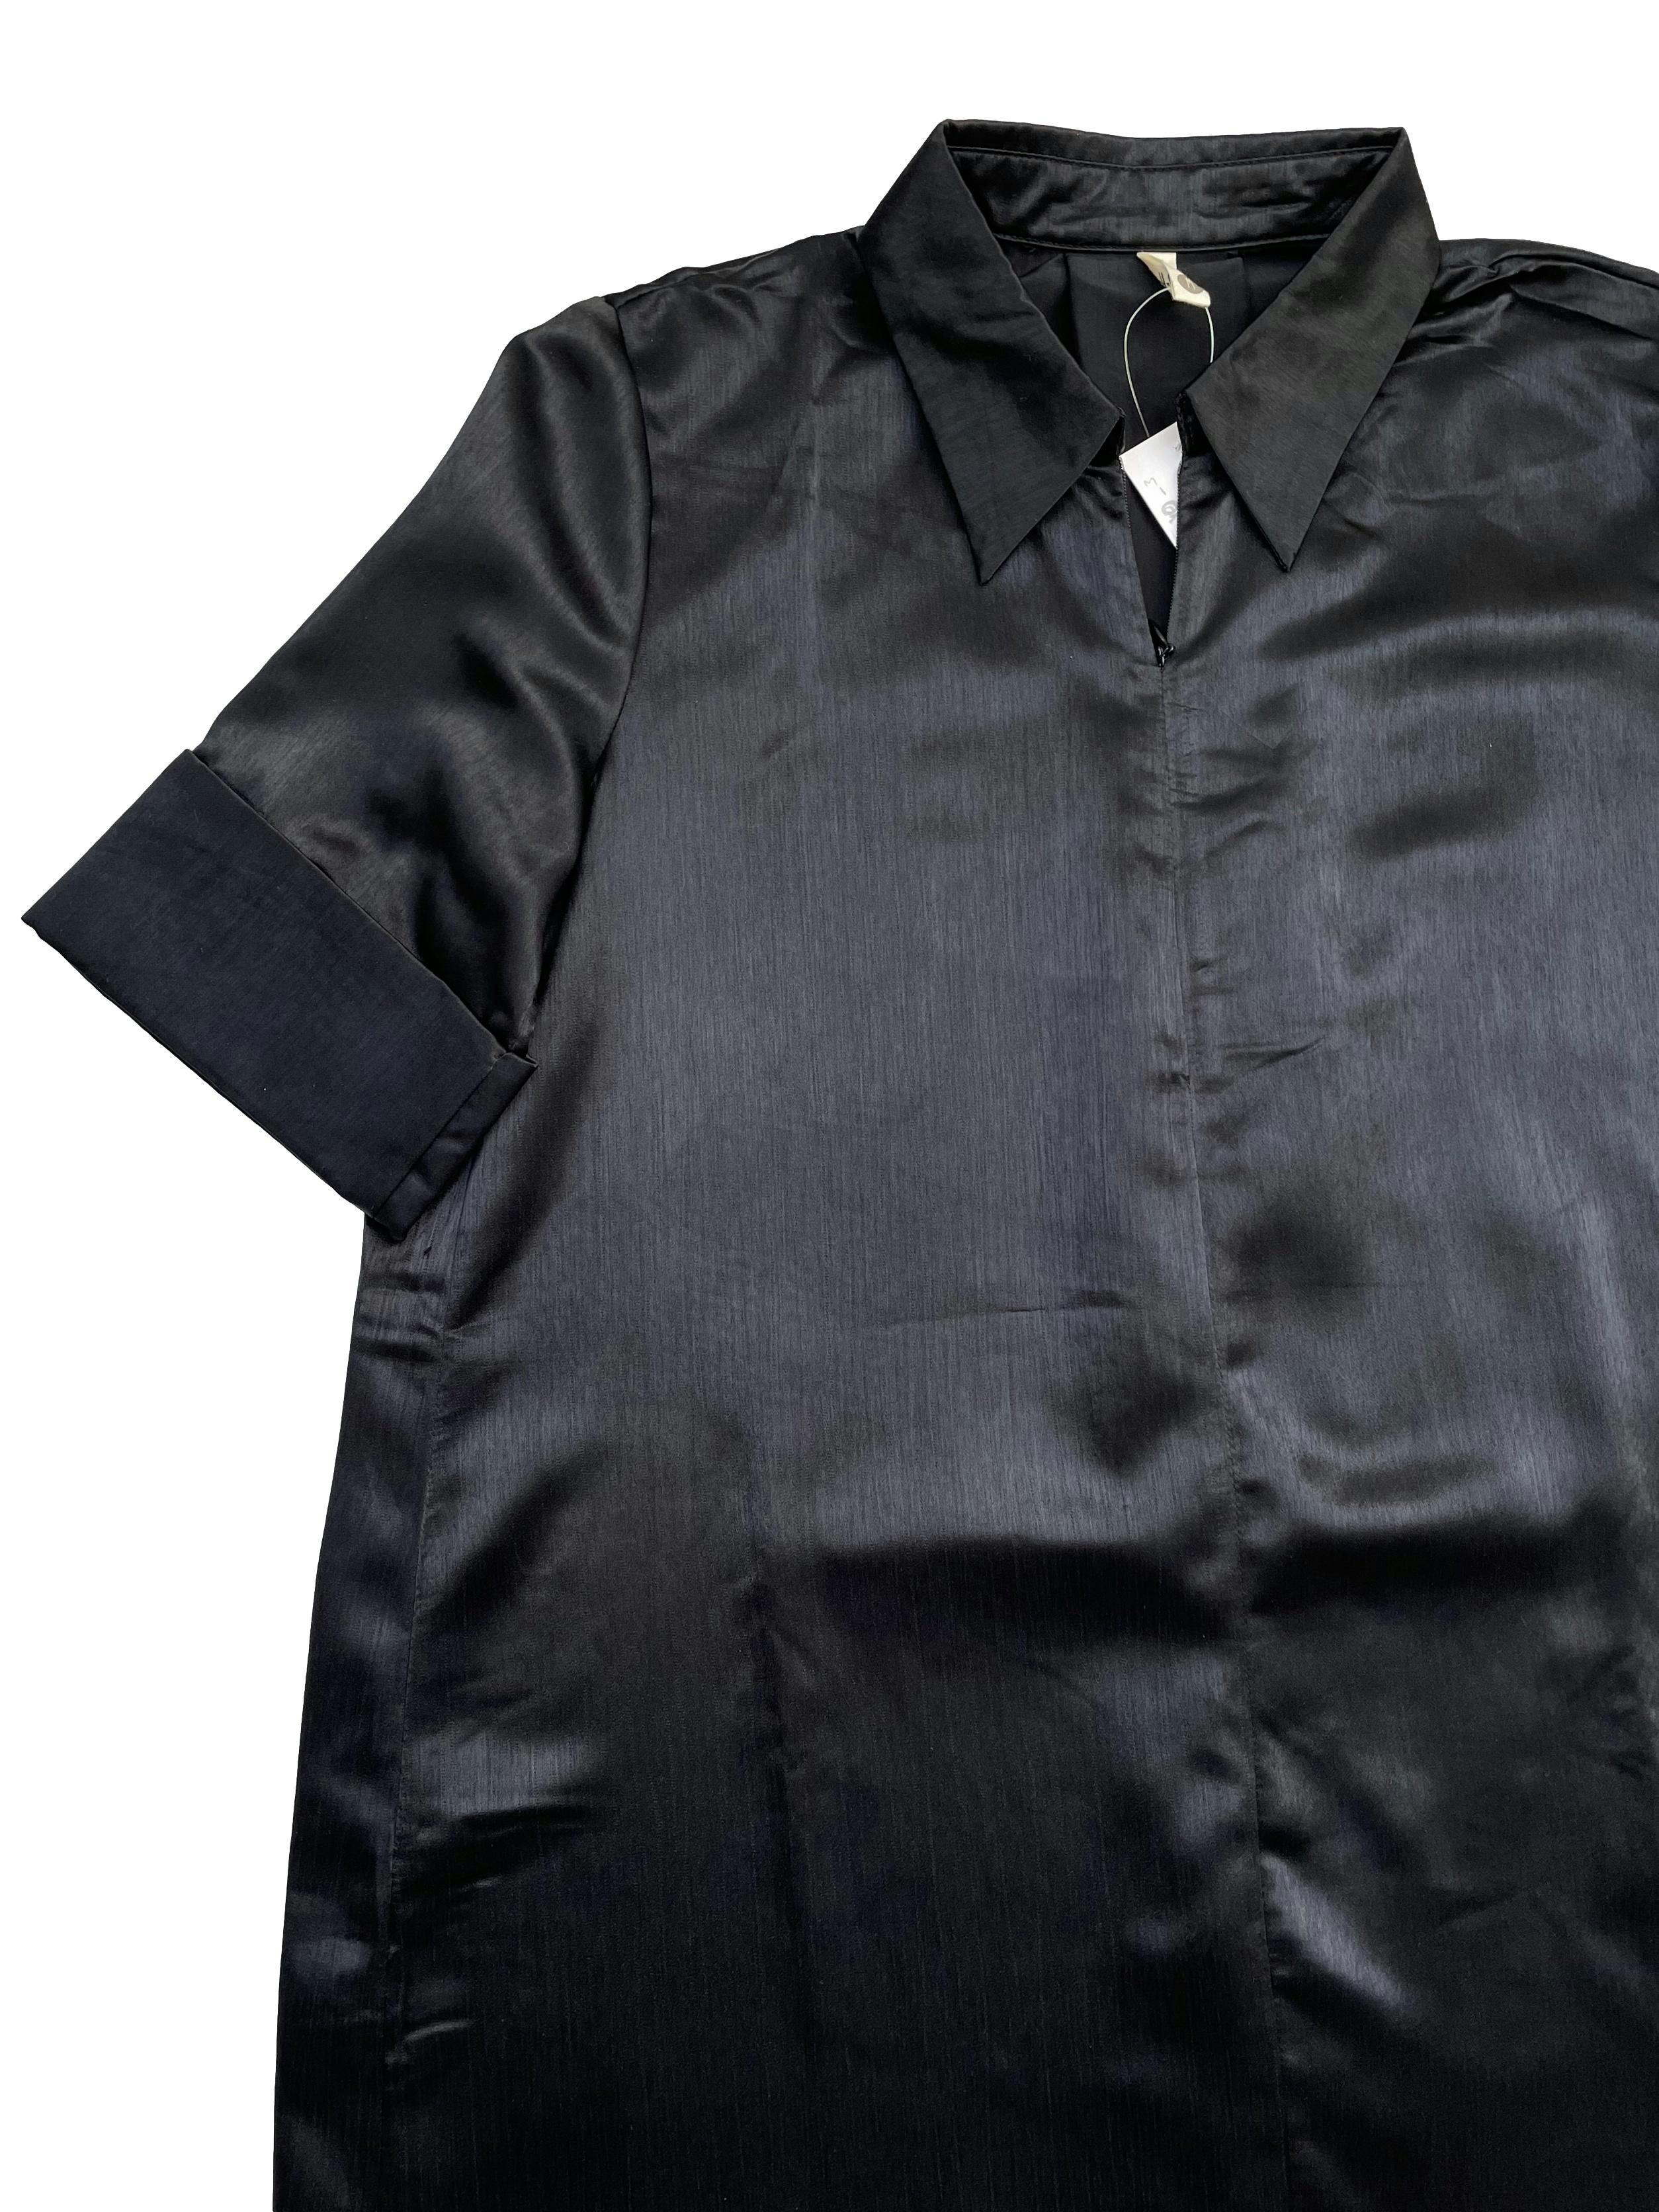 Vestido de tela sedosa negra, dobladillo en mangas, escote con cierre, suelto. Busto: 102cm, Largo: 108cm.